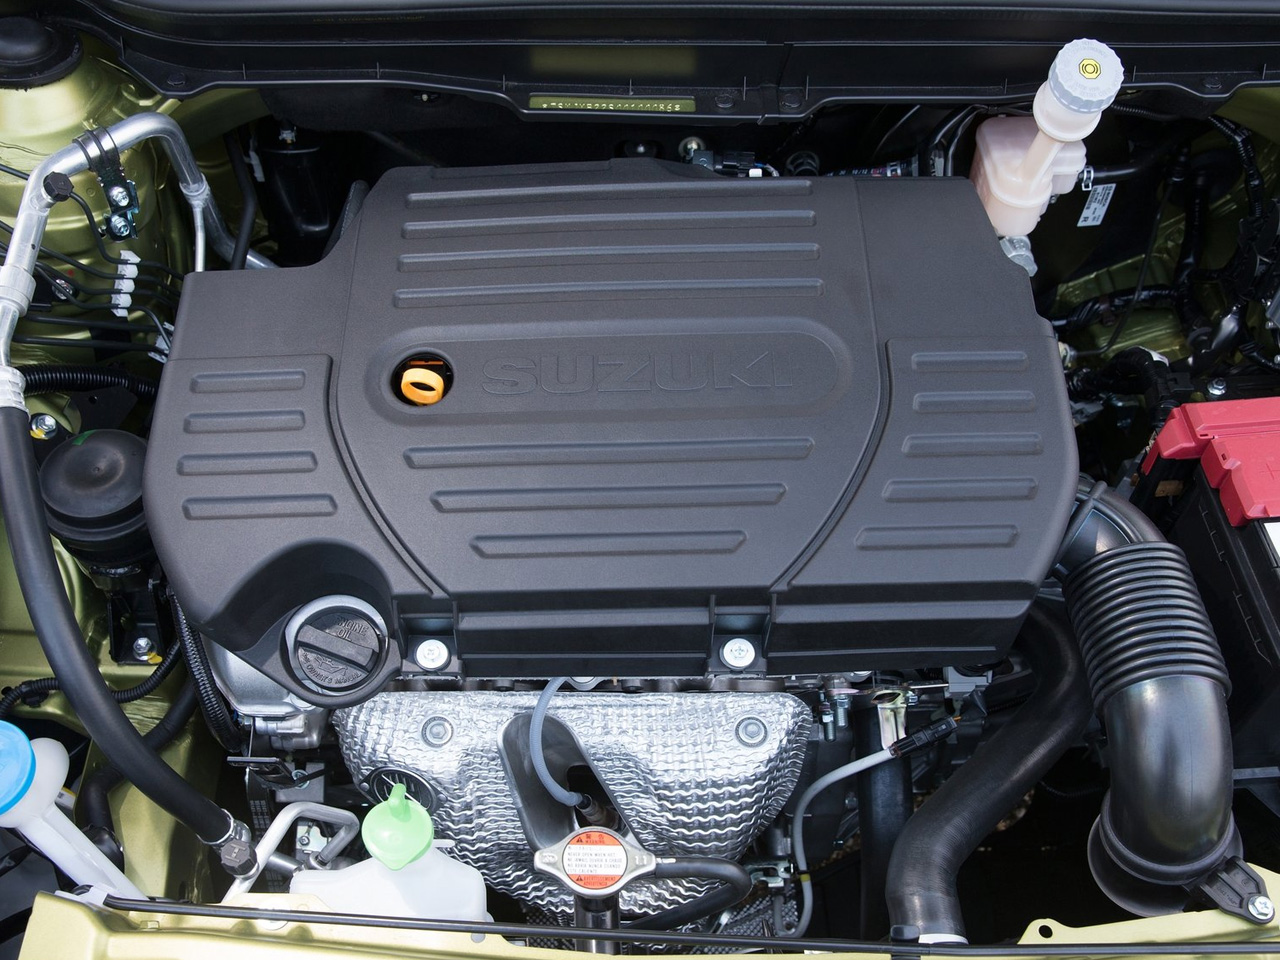 2013 Suzuki SX4 Crossover Engine View